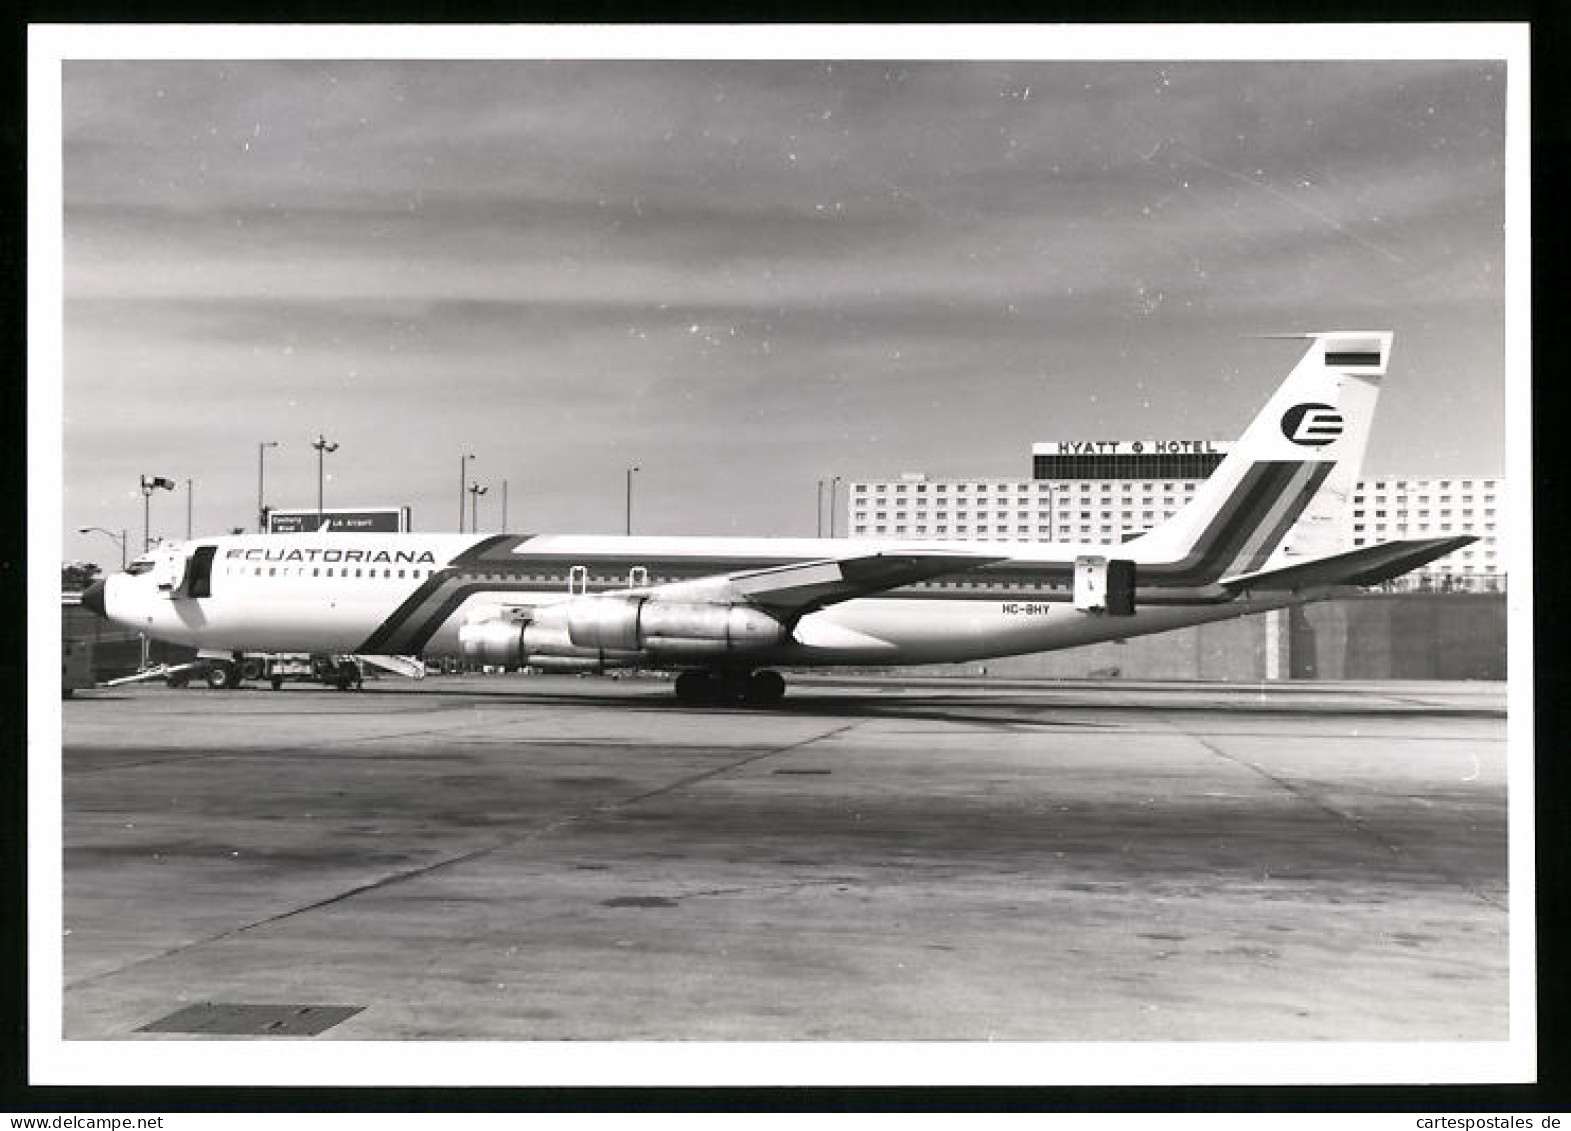 Fotografie Flughafen Los Angeles, Flugzeug Boeing 707, Passagierflugzeug Der Ecuatoriana, Kennung HC-BHY  - Aviation